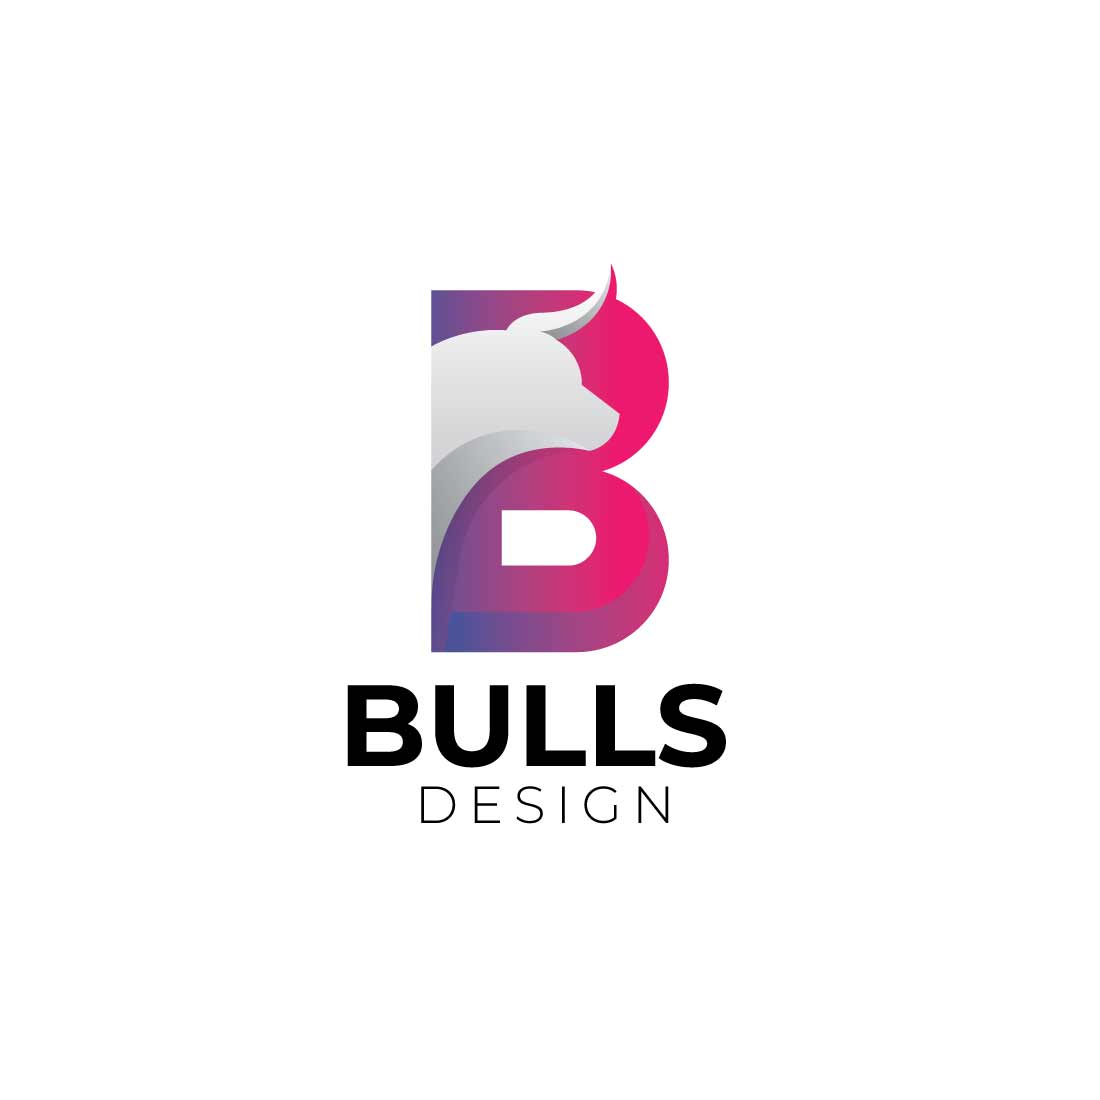 Creative B letter bull logo design cover image.